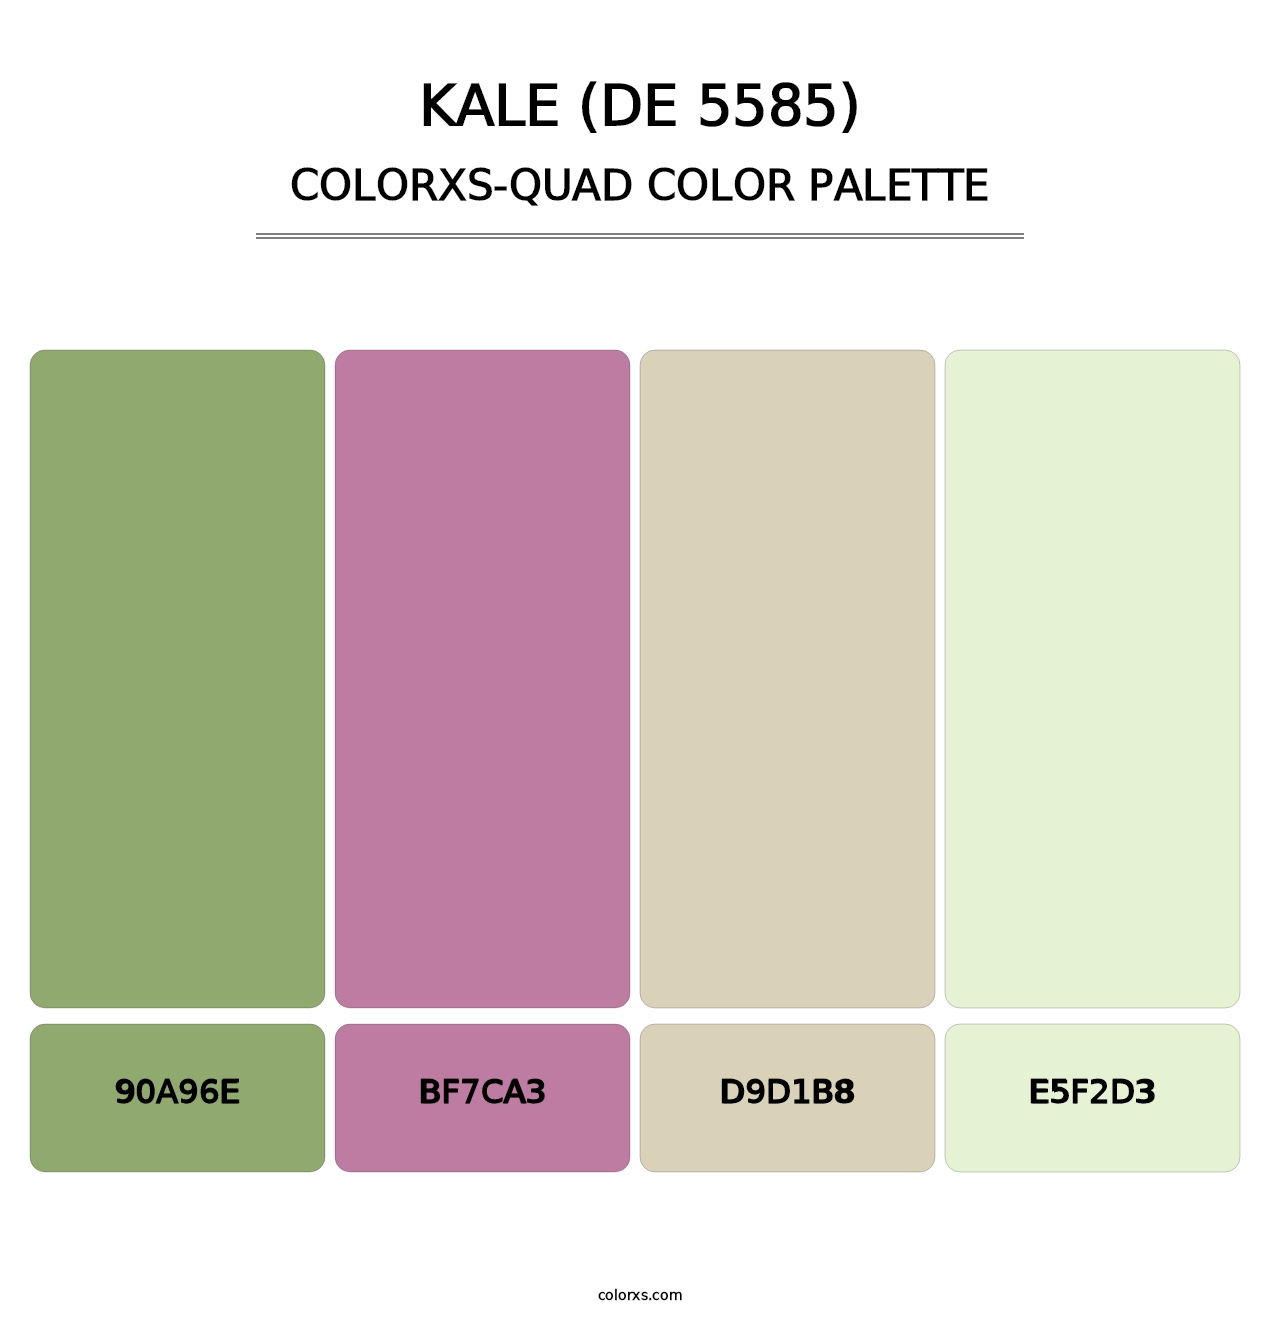 Kale (DE 5585) - Colorxs Quad Palette